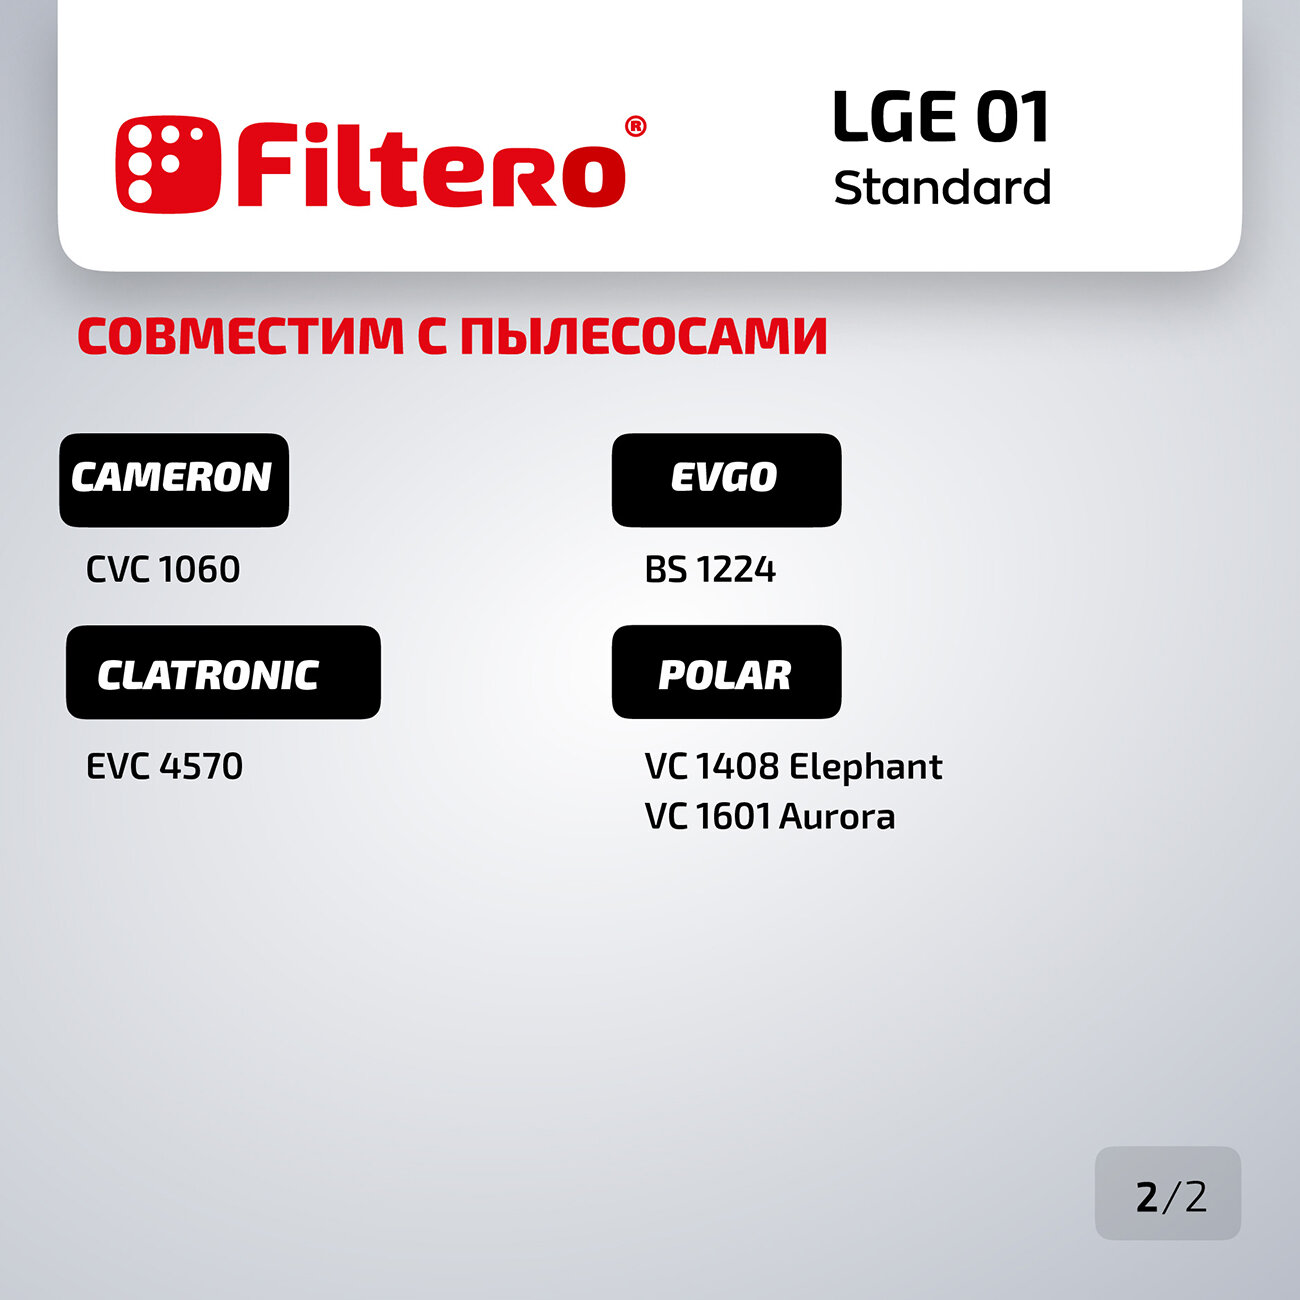 Мешки-пылесборники Filtero LGE 01 Standard для пылесосов LG, бумажные, 5 шт.